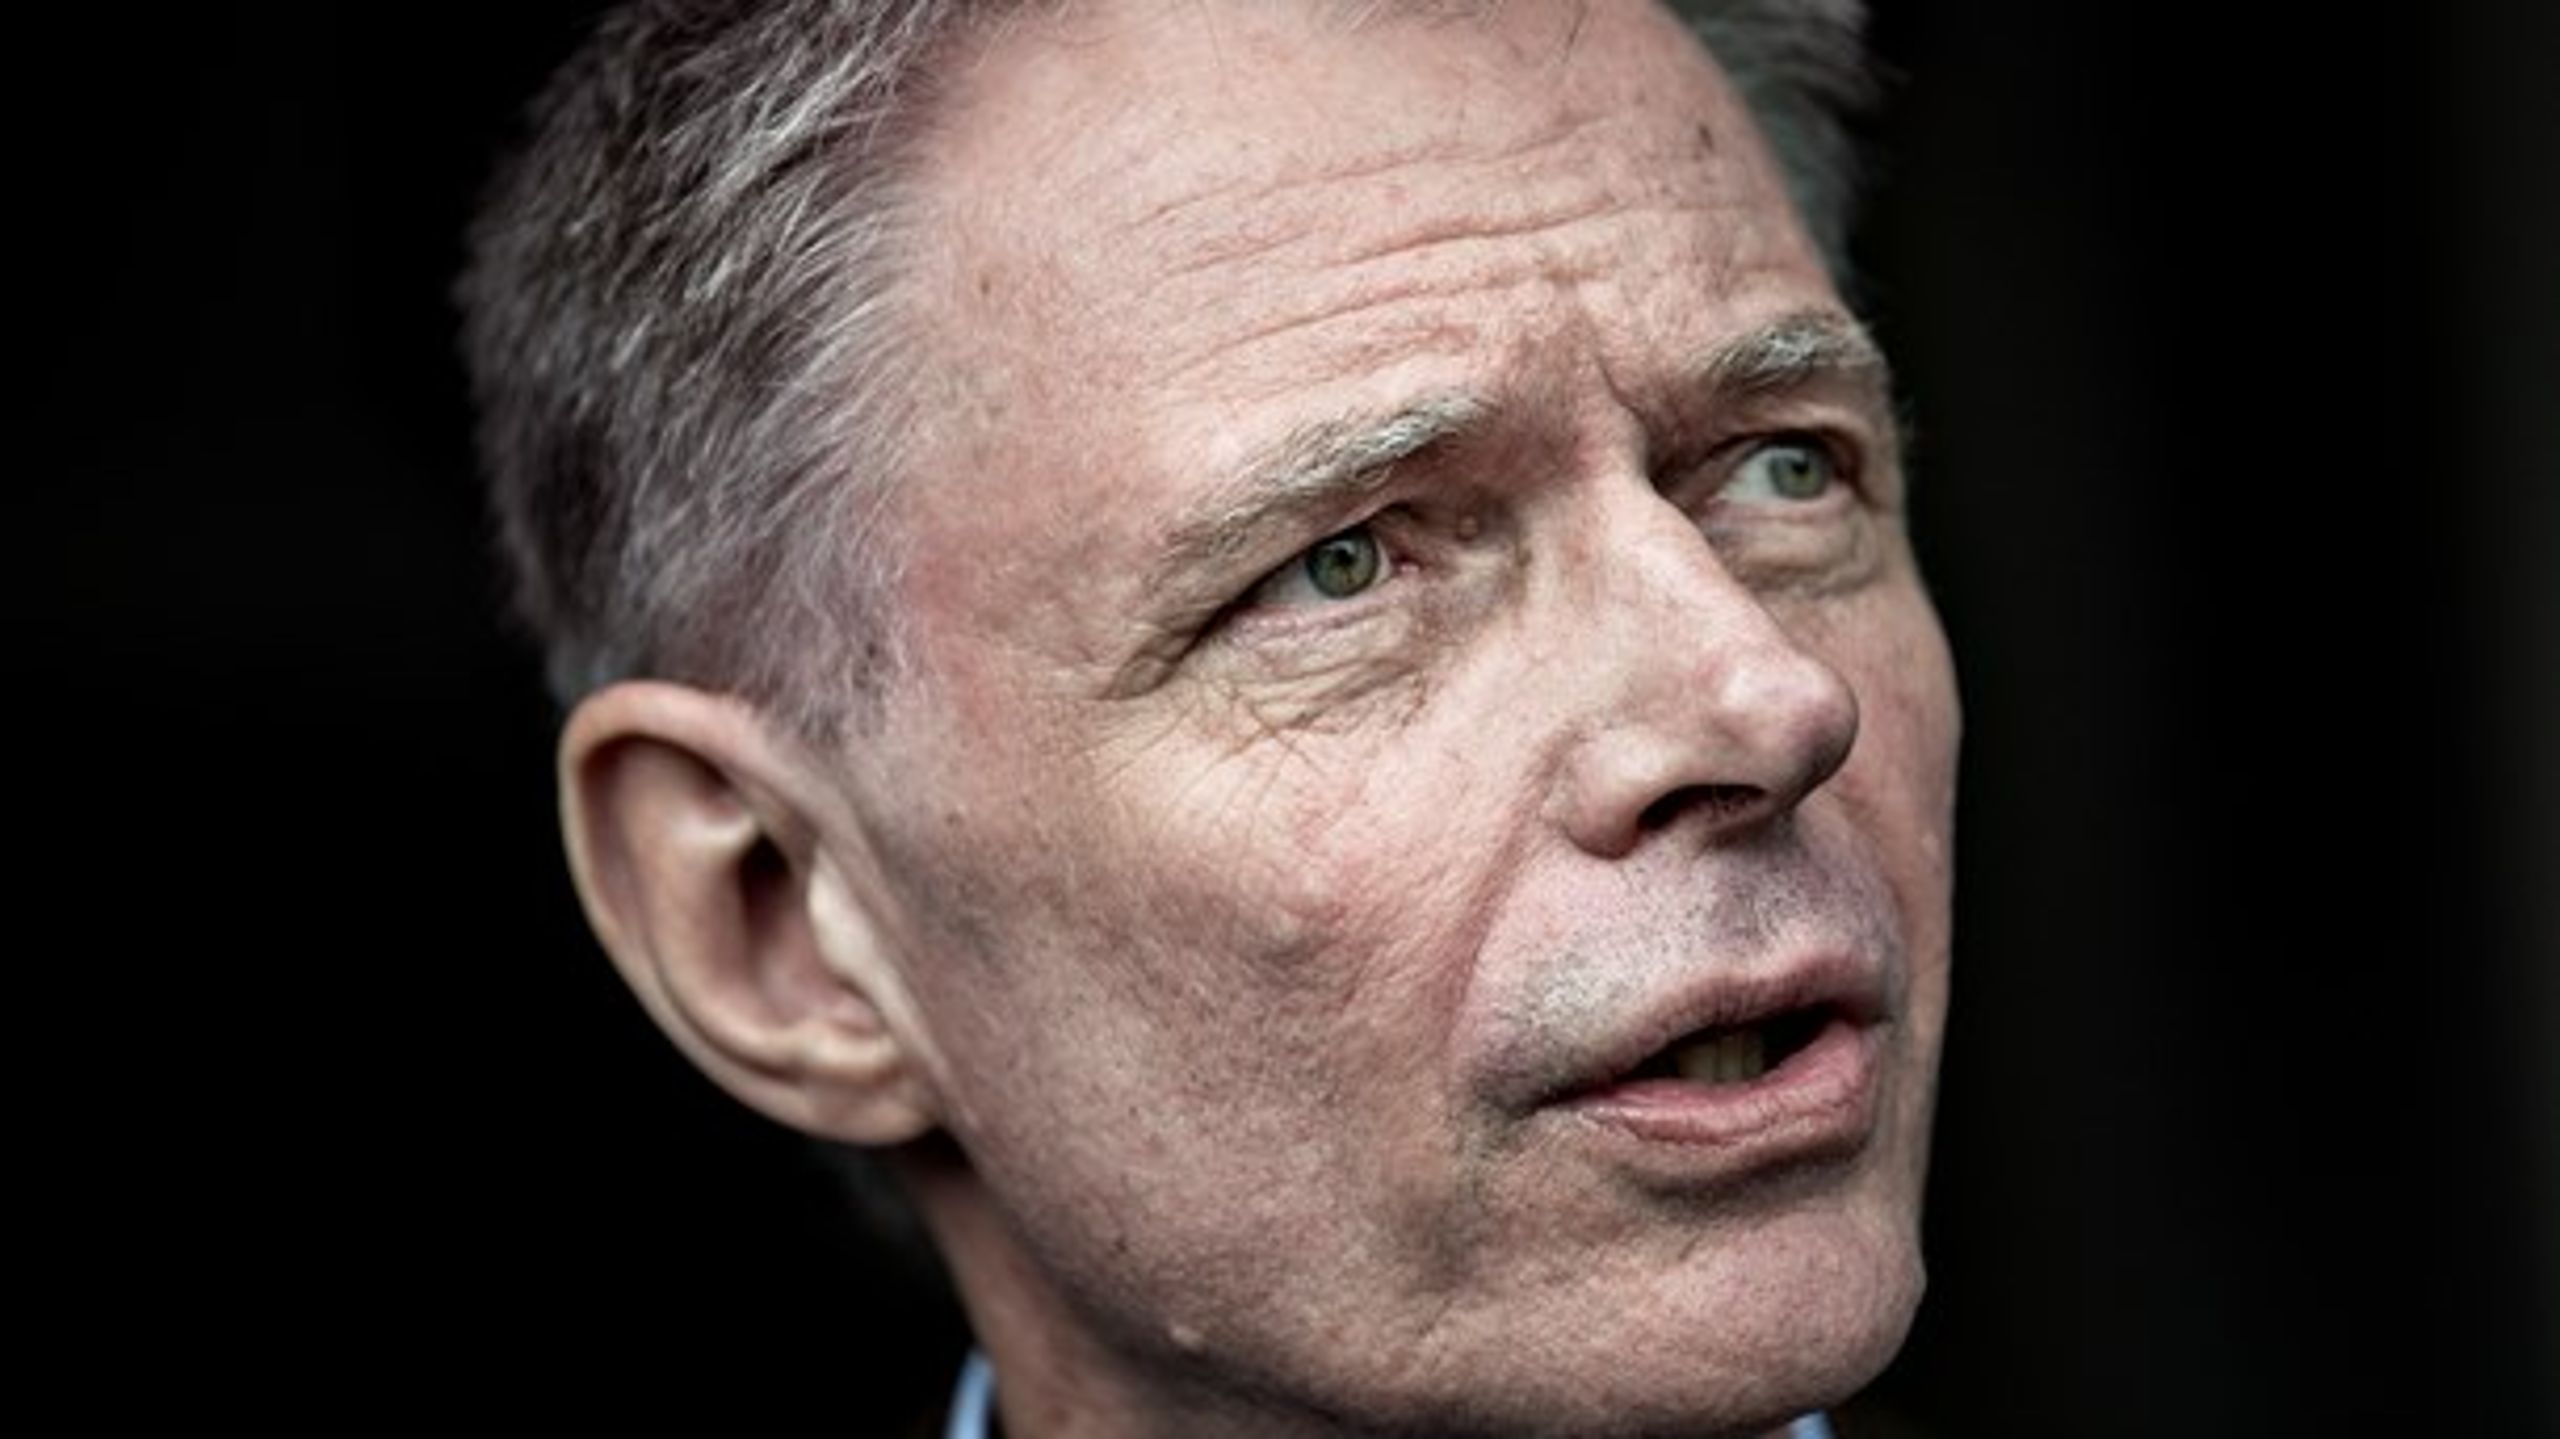 Finansmanden Klaus Riskær Pedersen er blandt de seneste kendte danskere, der misbruges i fupinterviews i falske artikler på nettet.